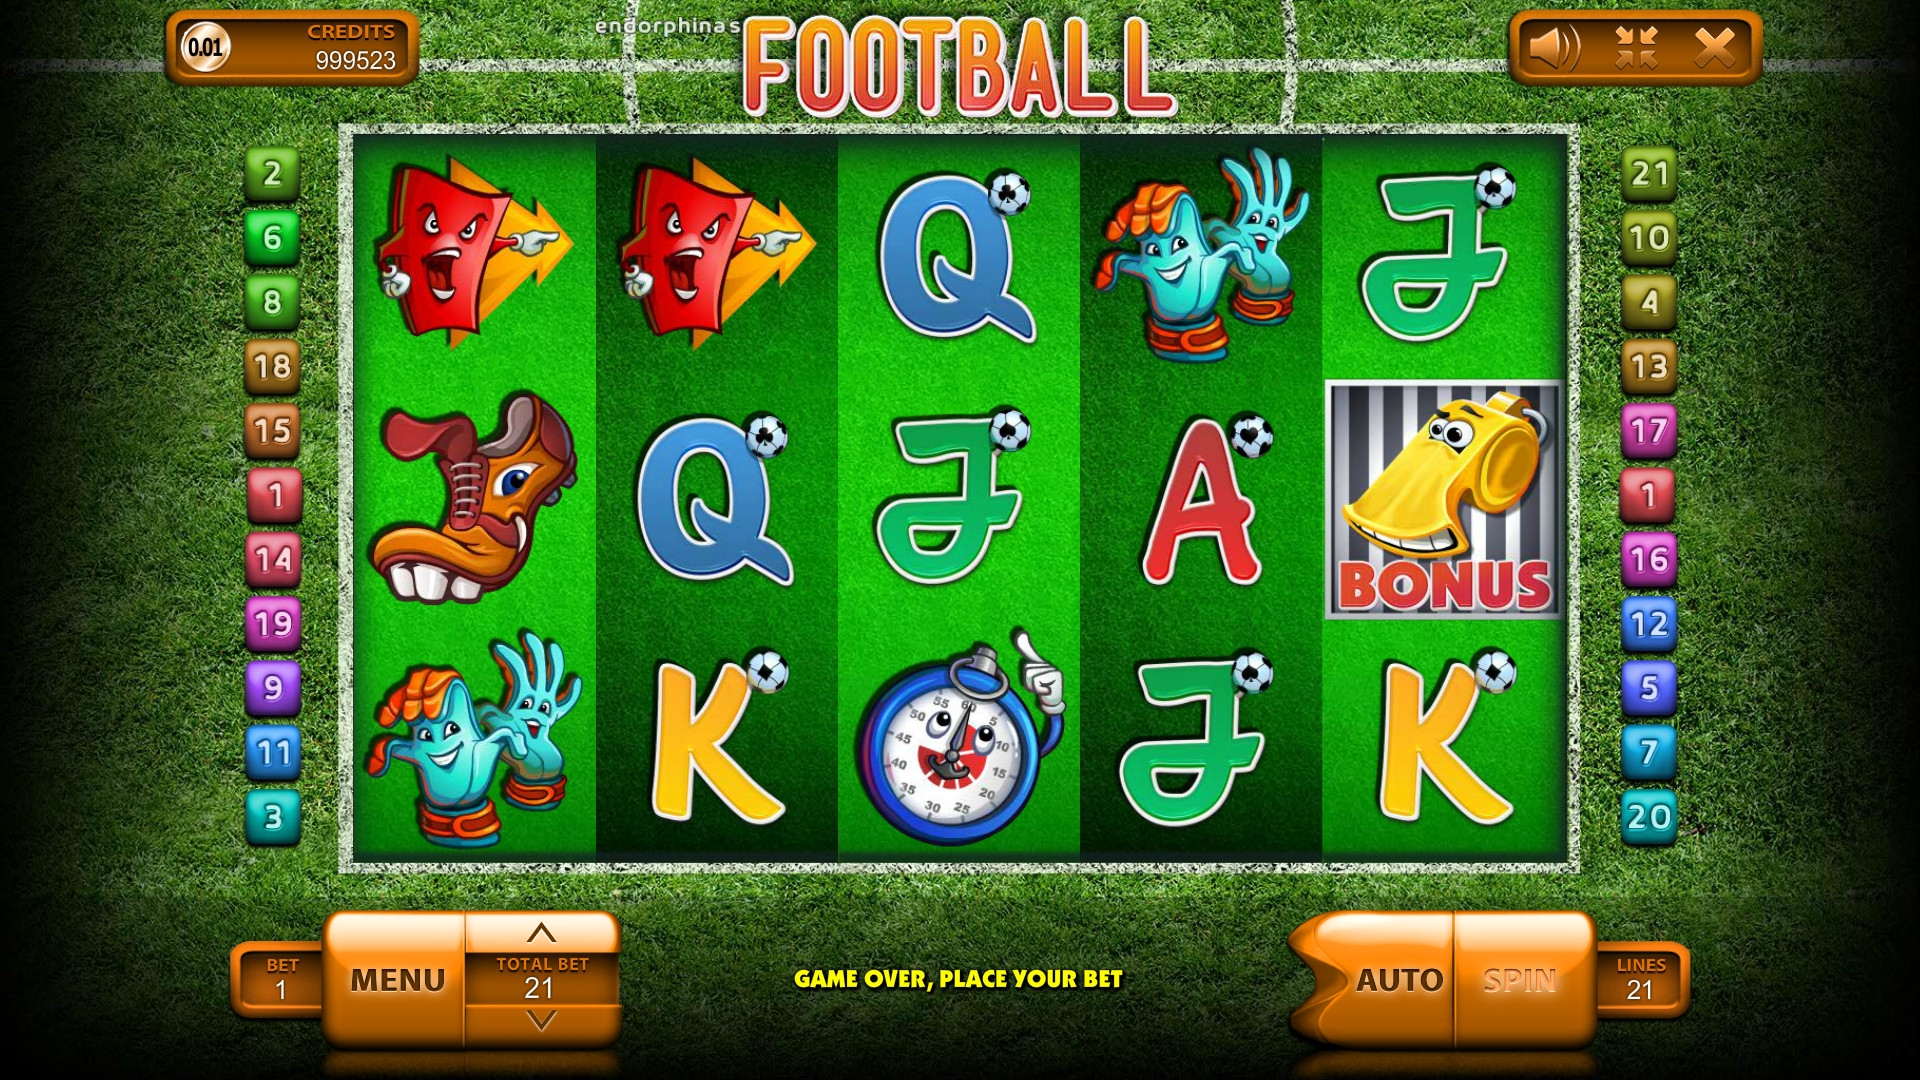 Football (Football) from category Slots